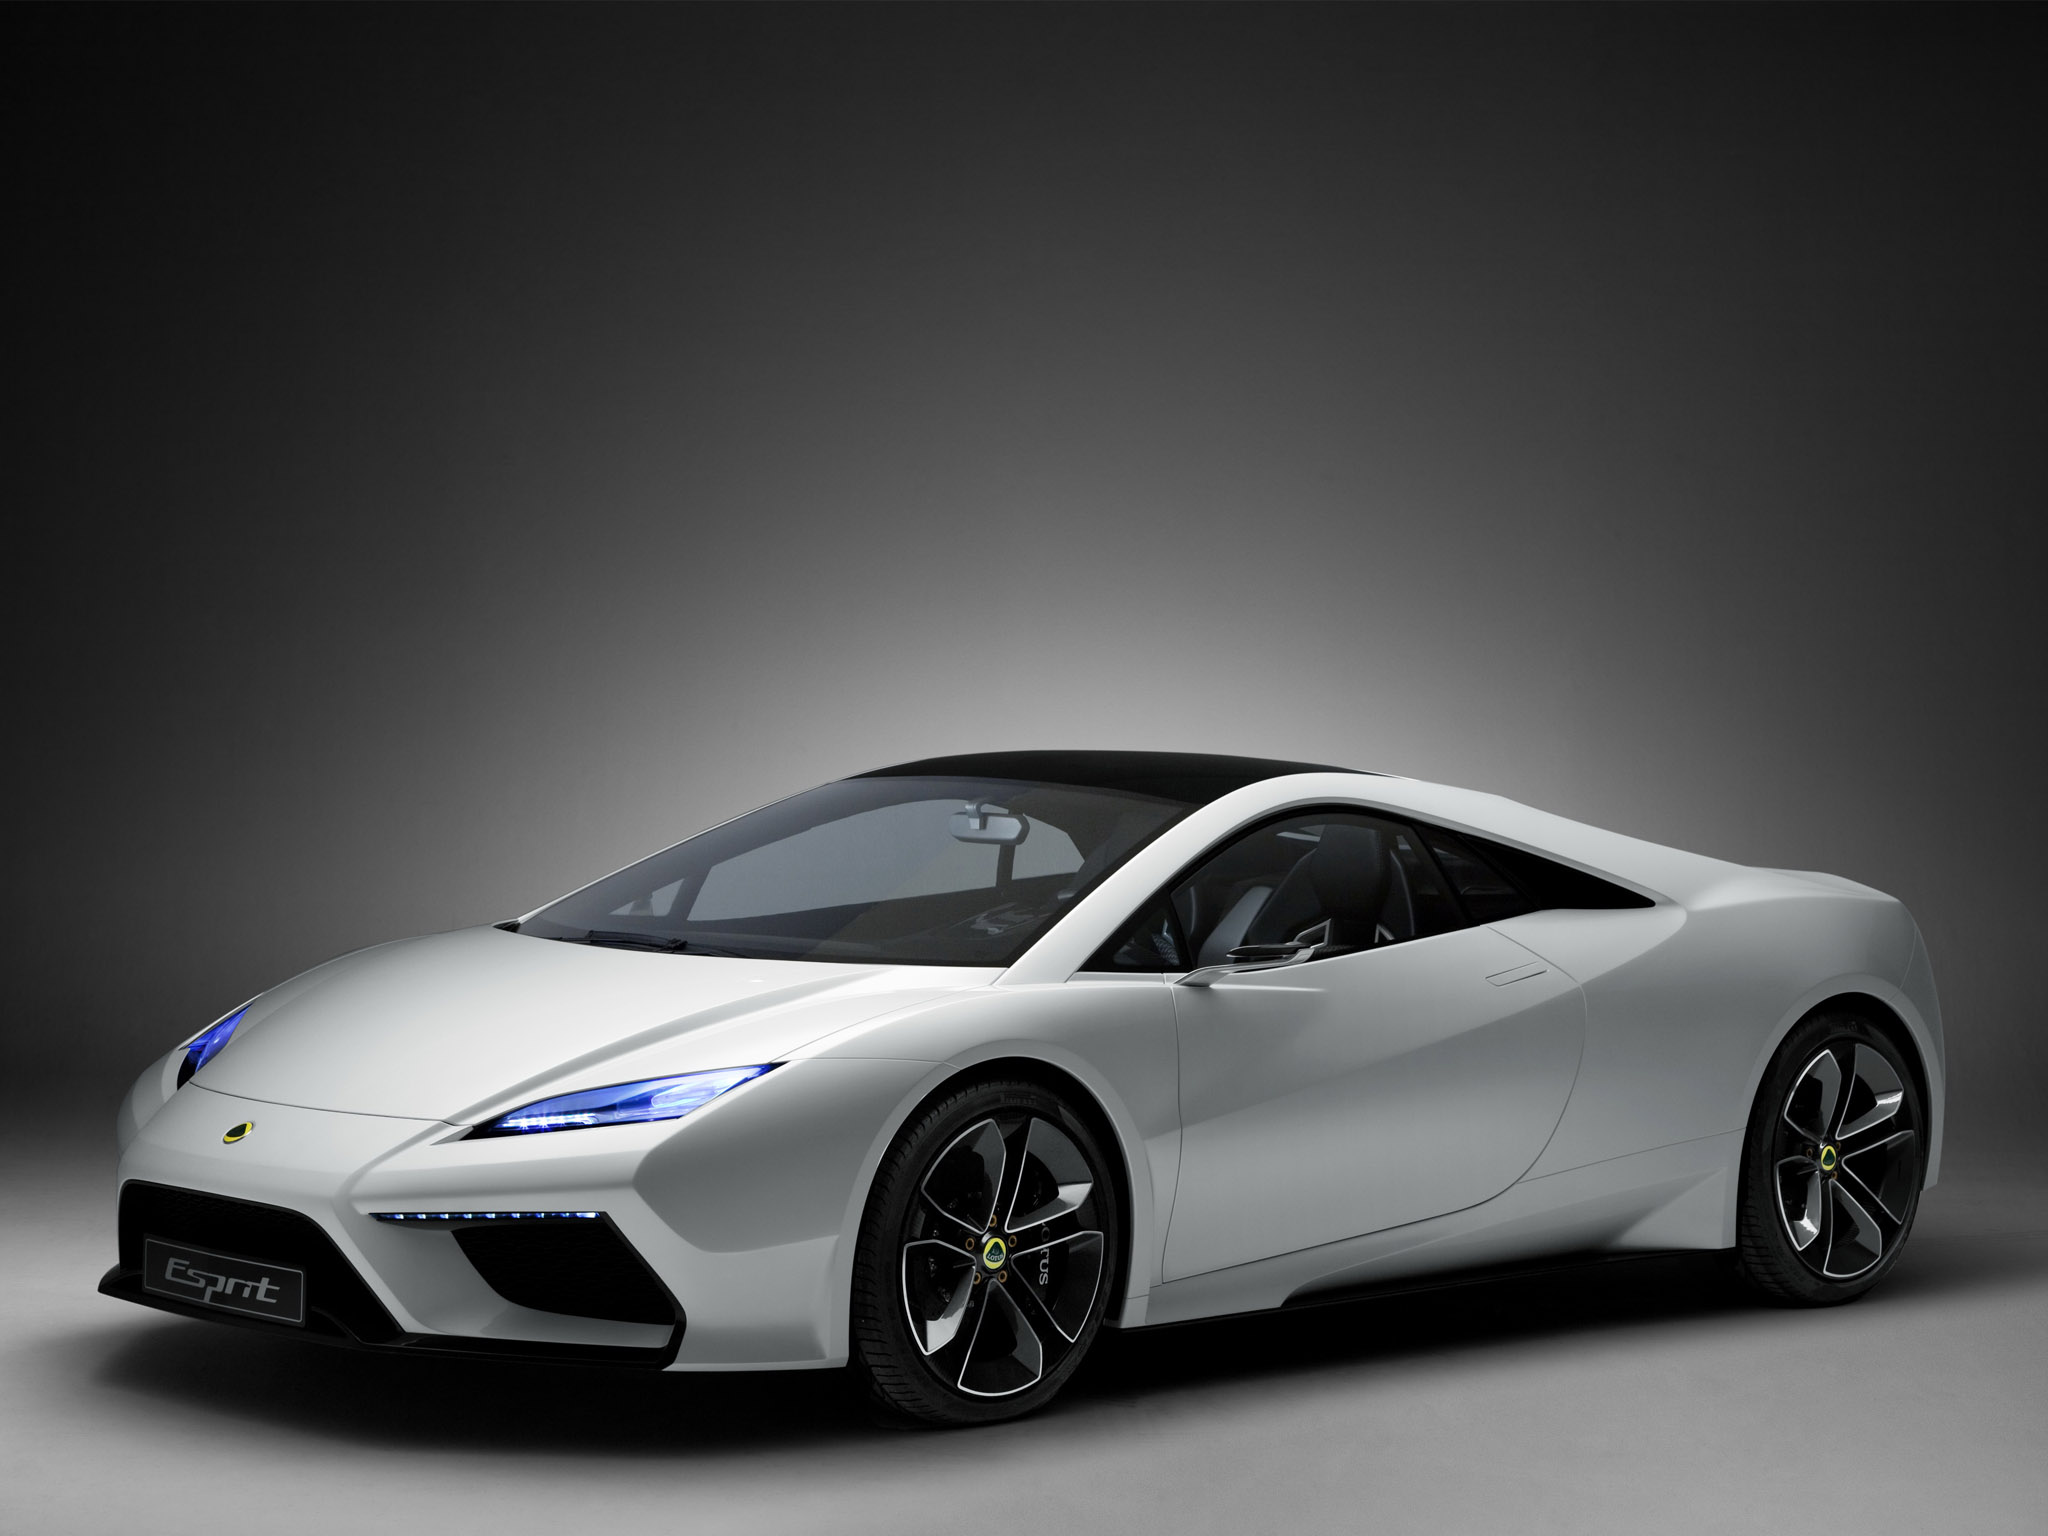 2010, Lotus, Esprit, Concept, Supercar, Supercars Wallpaper